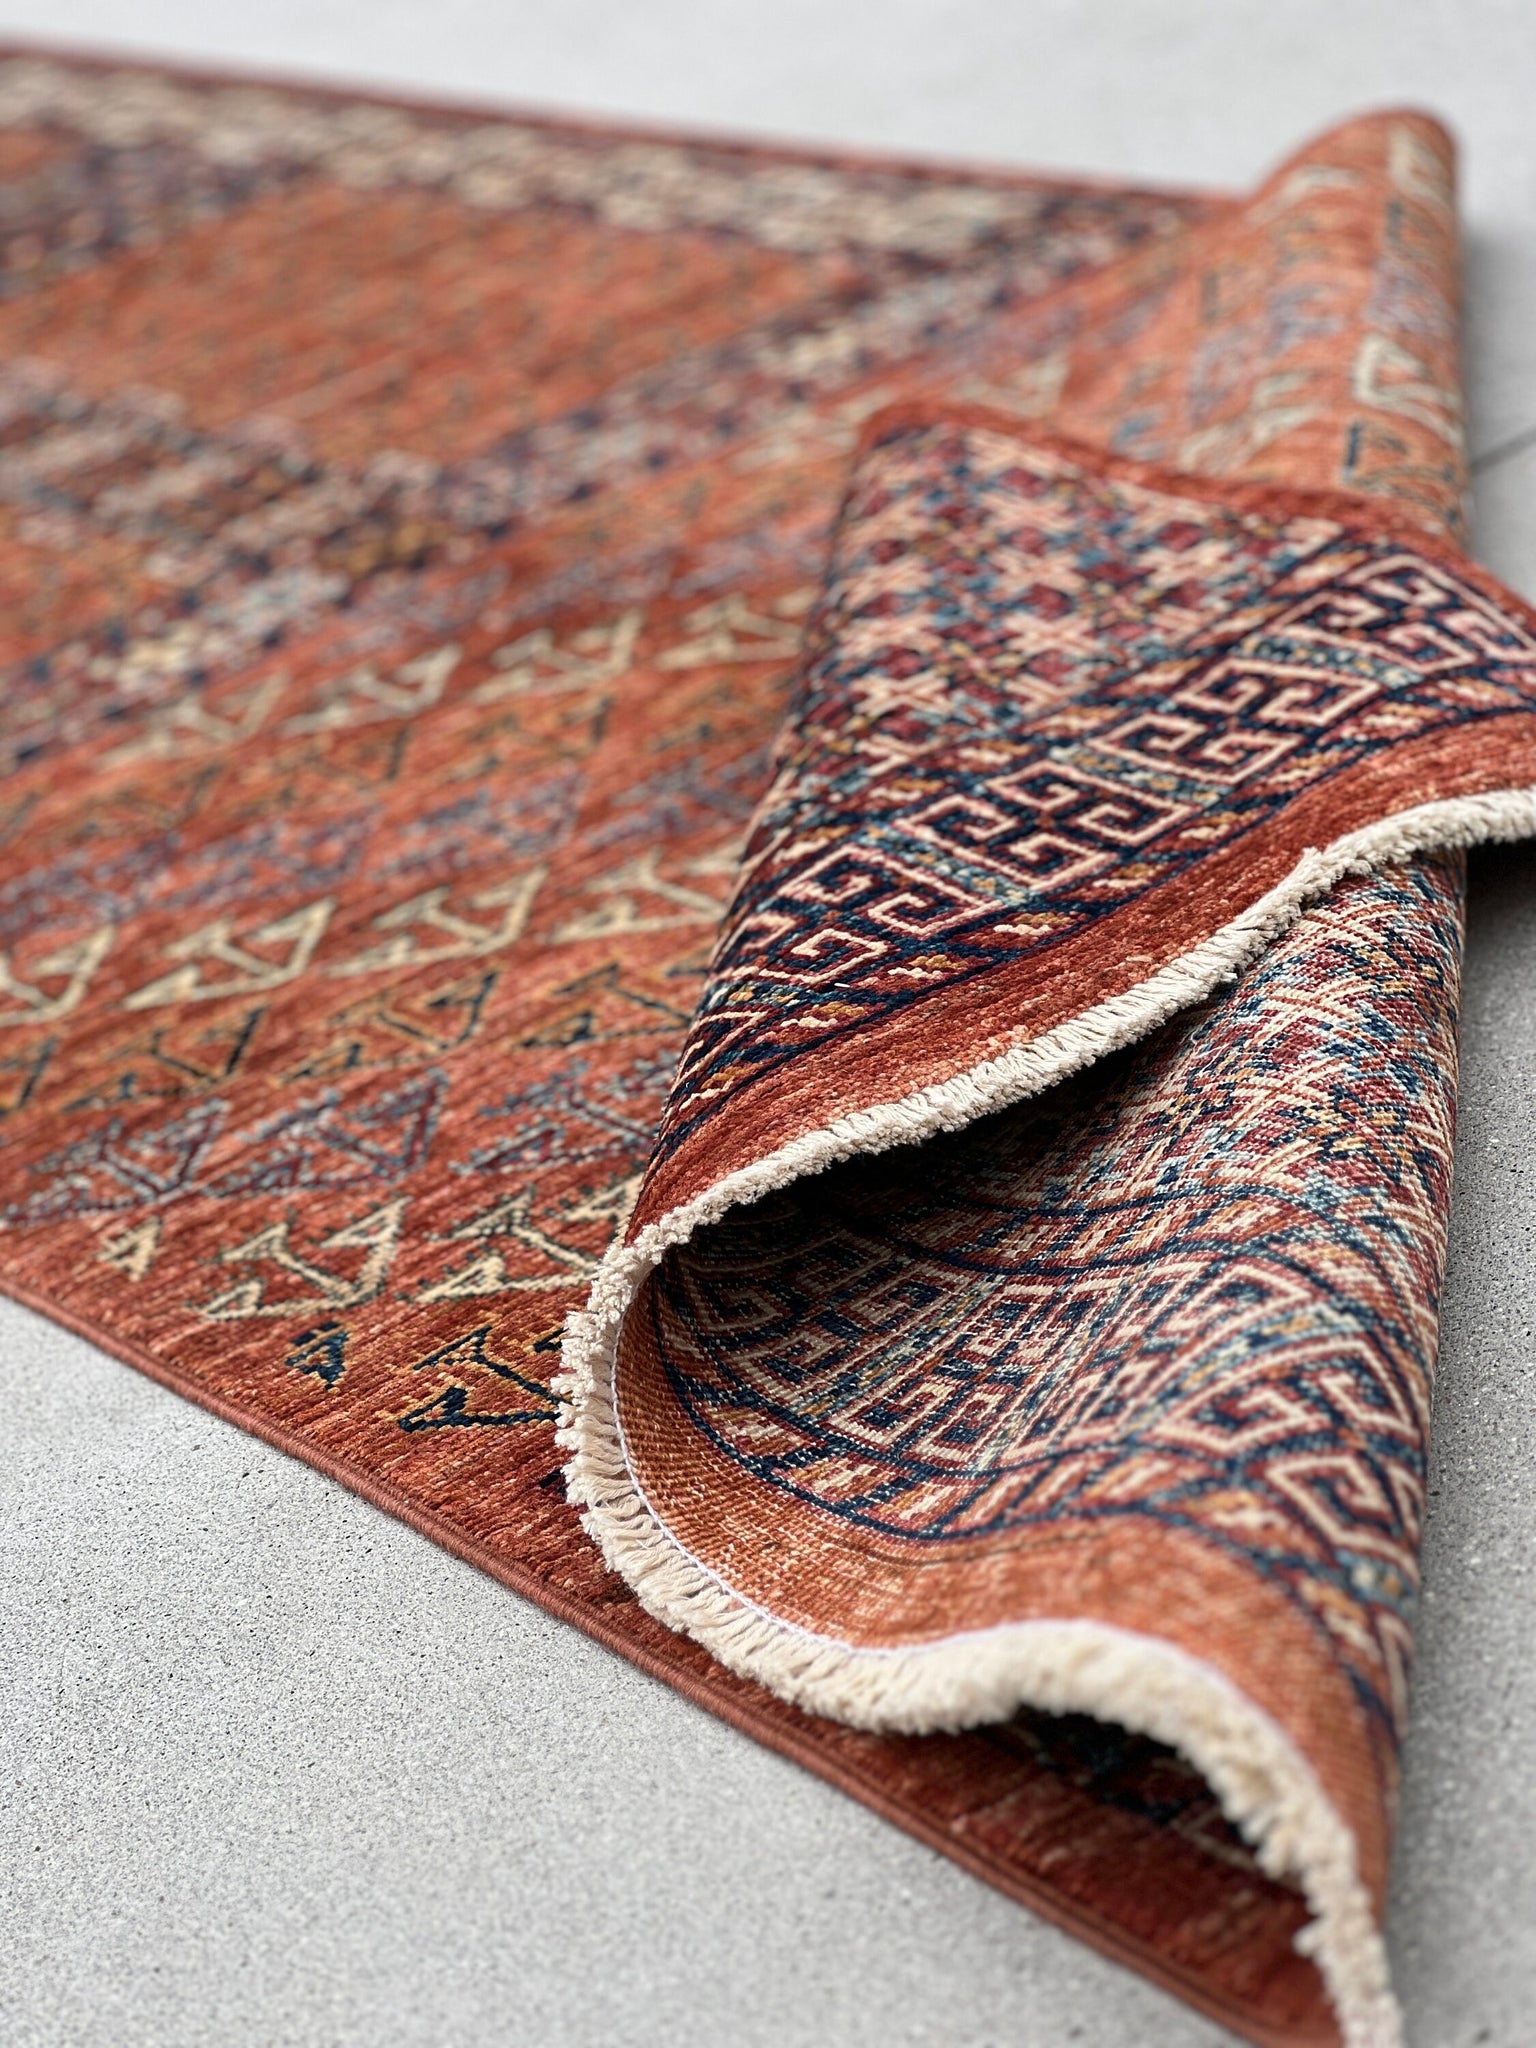 3x11 Handmade Afghan Kilim Runner Rug | Brown Navy Blue Ivory Beige Sage Green Caramel Red | Flatweave Flat Woven Wool Persian